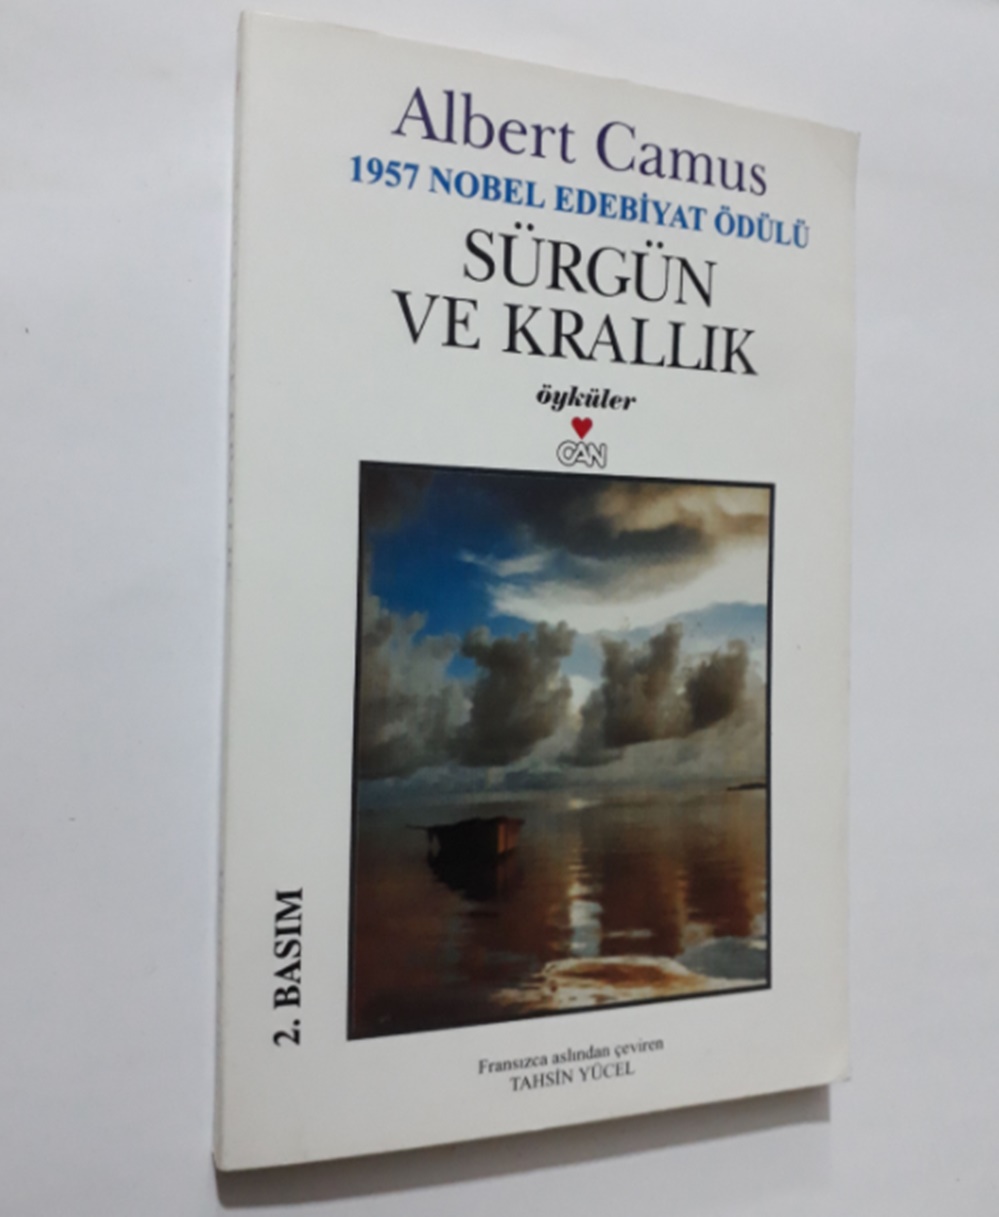 Albert Camus kitapları Sürgün ve Krallık adlı kitap